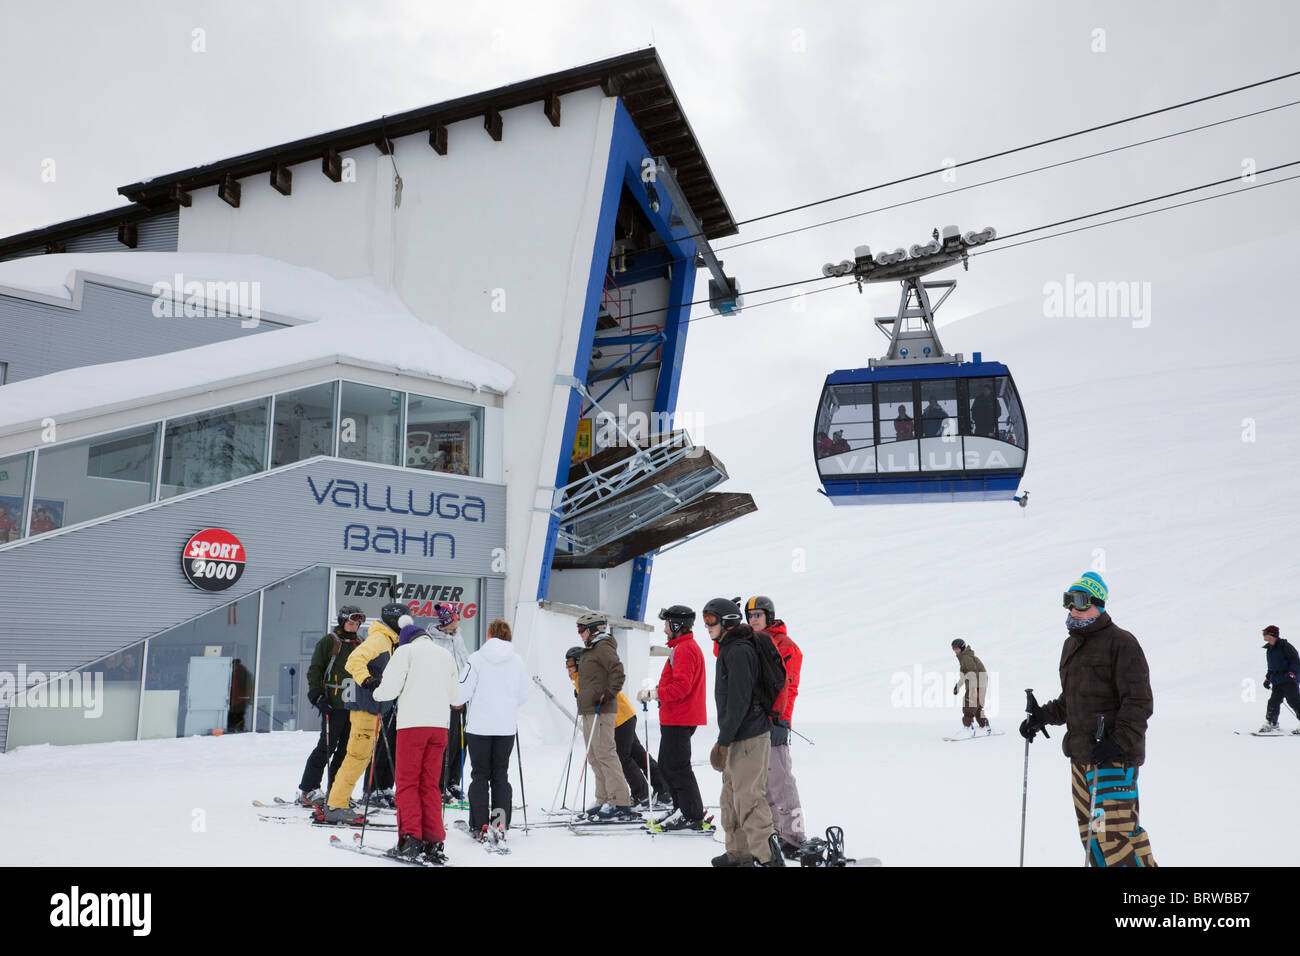 Skifahrer und Valluga Bahn mit Seilbahn am Galzig Bergstation Gondelbahn in den österreichischen Alpen im Winter. St. Anton, Tirol, Österreich. Stockfoto